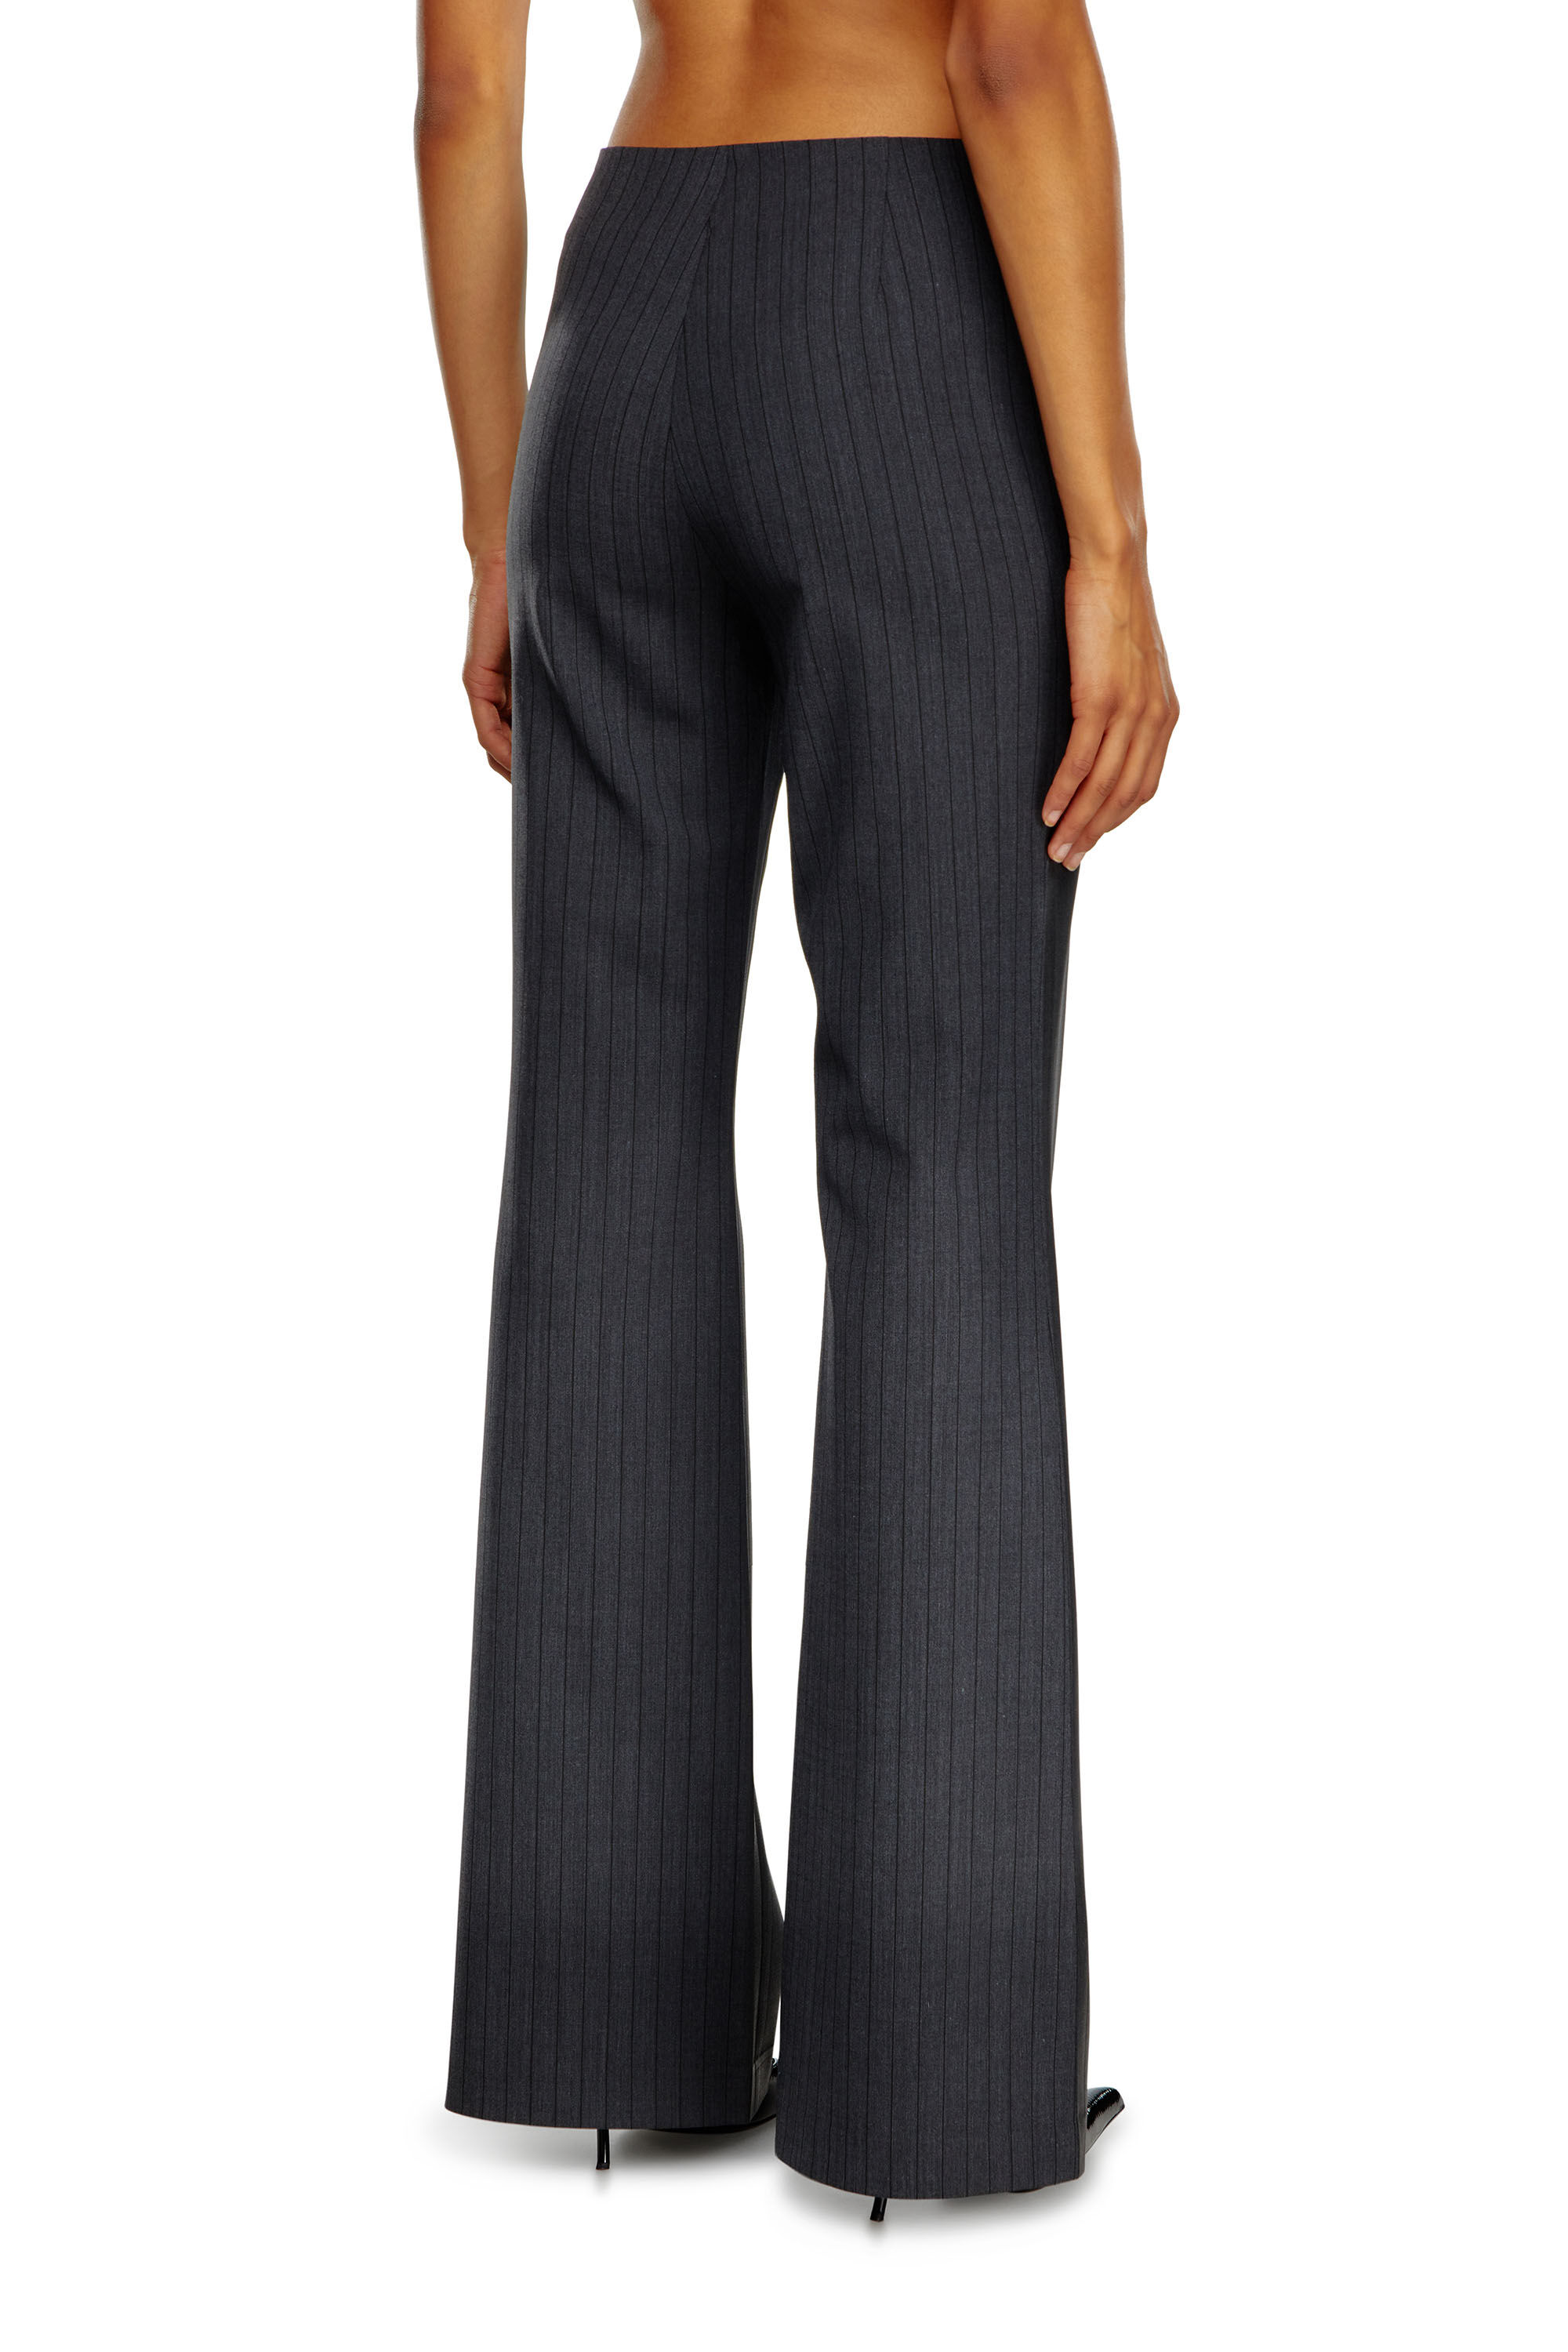 Diesel - P-OLARIS, Femme Pantalon à fines rayures avec devant enduit in Noir - Image 4